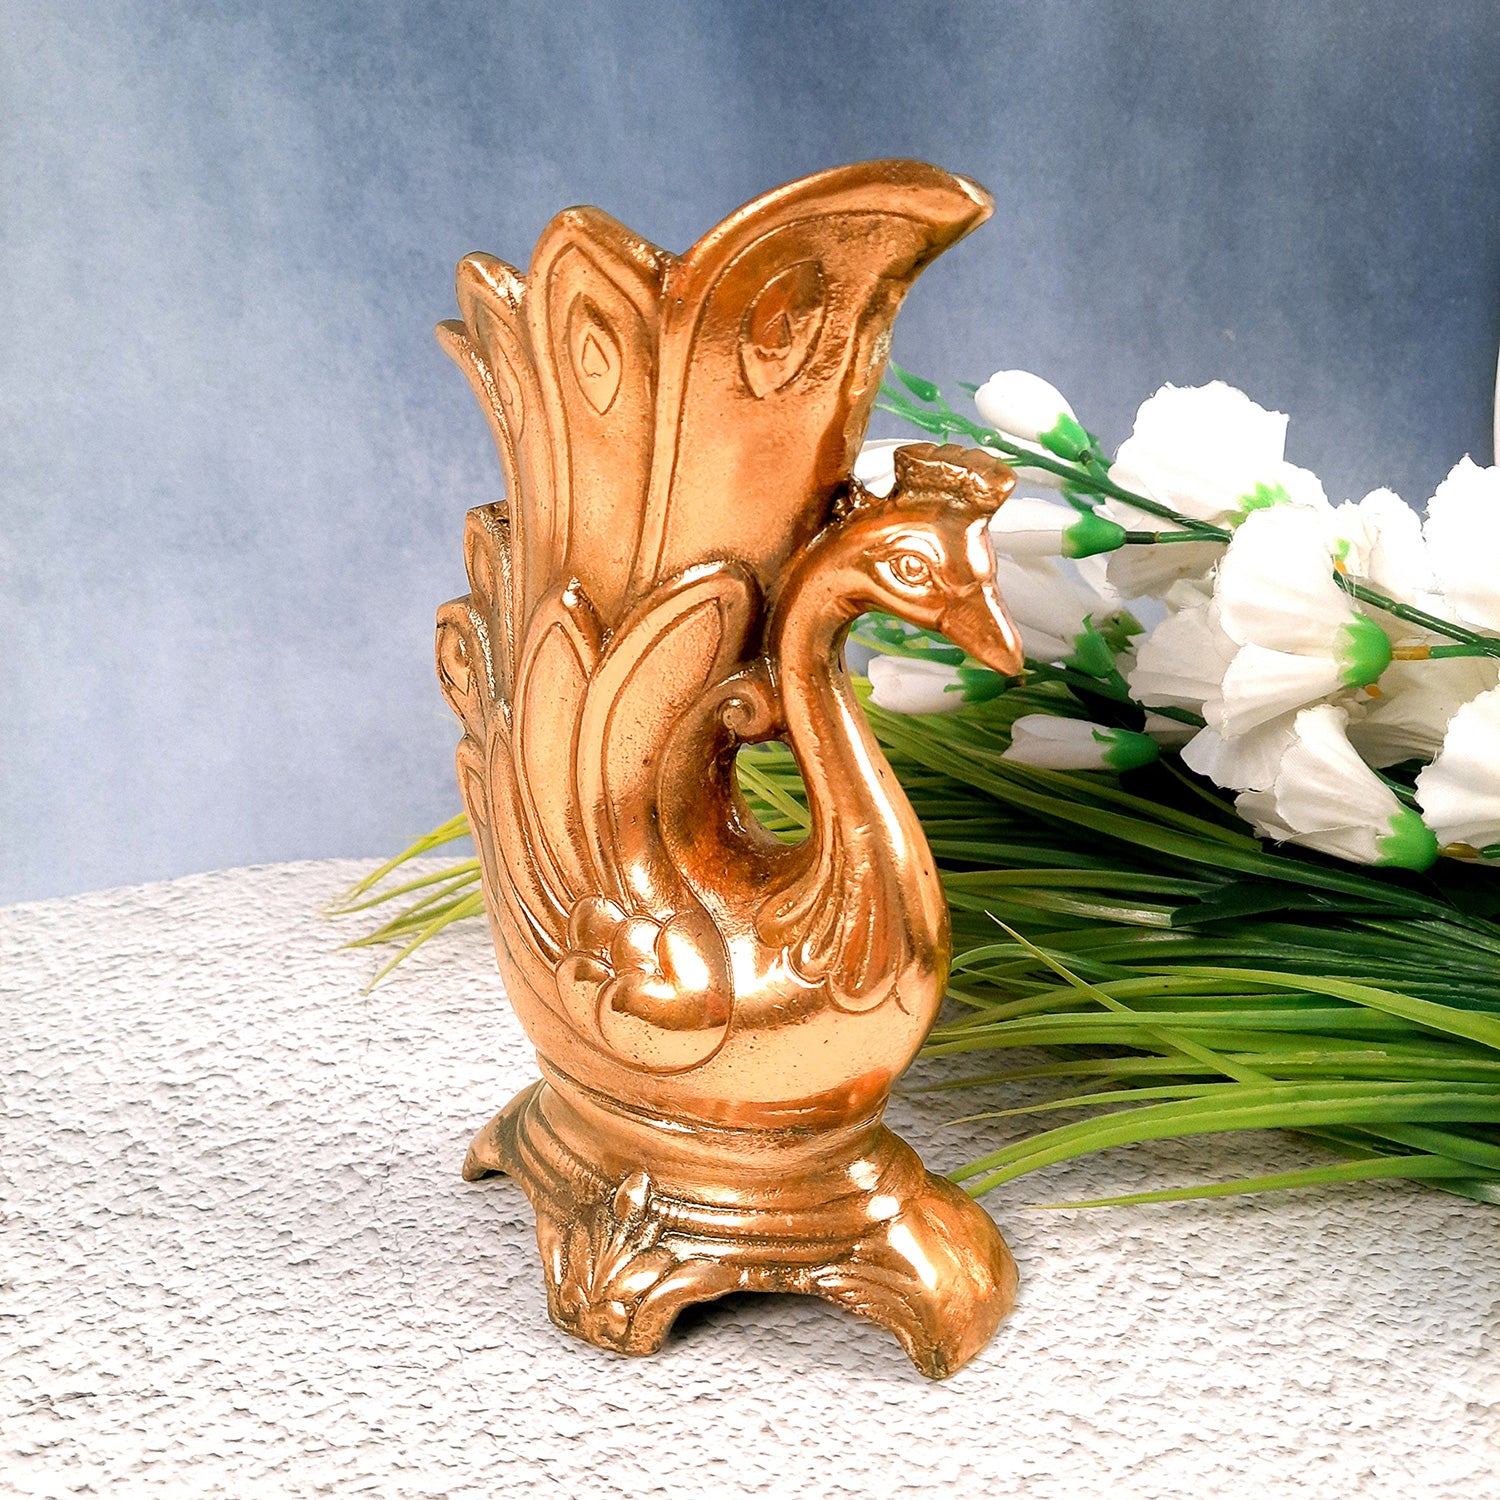 Flower Vase Swan Design | Metal Flower Pot - For Table, Home, Living Room Decor & Gifts - 9 Inch - Apkamart